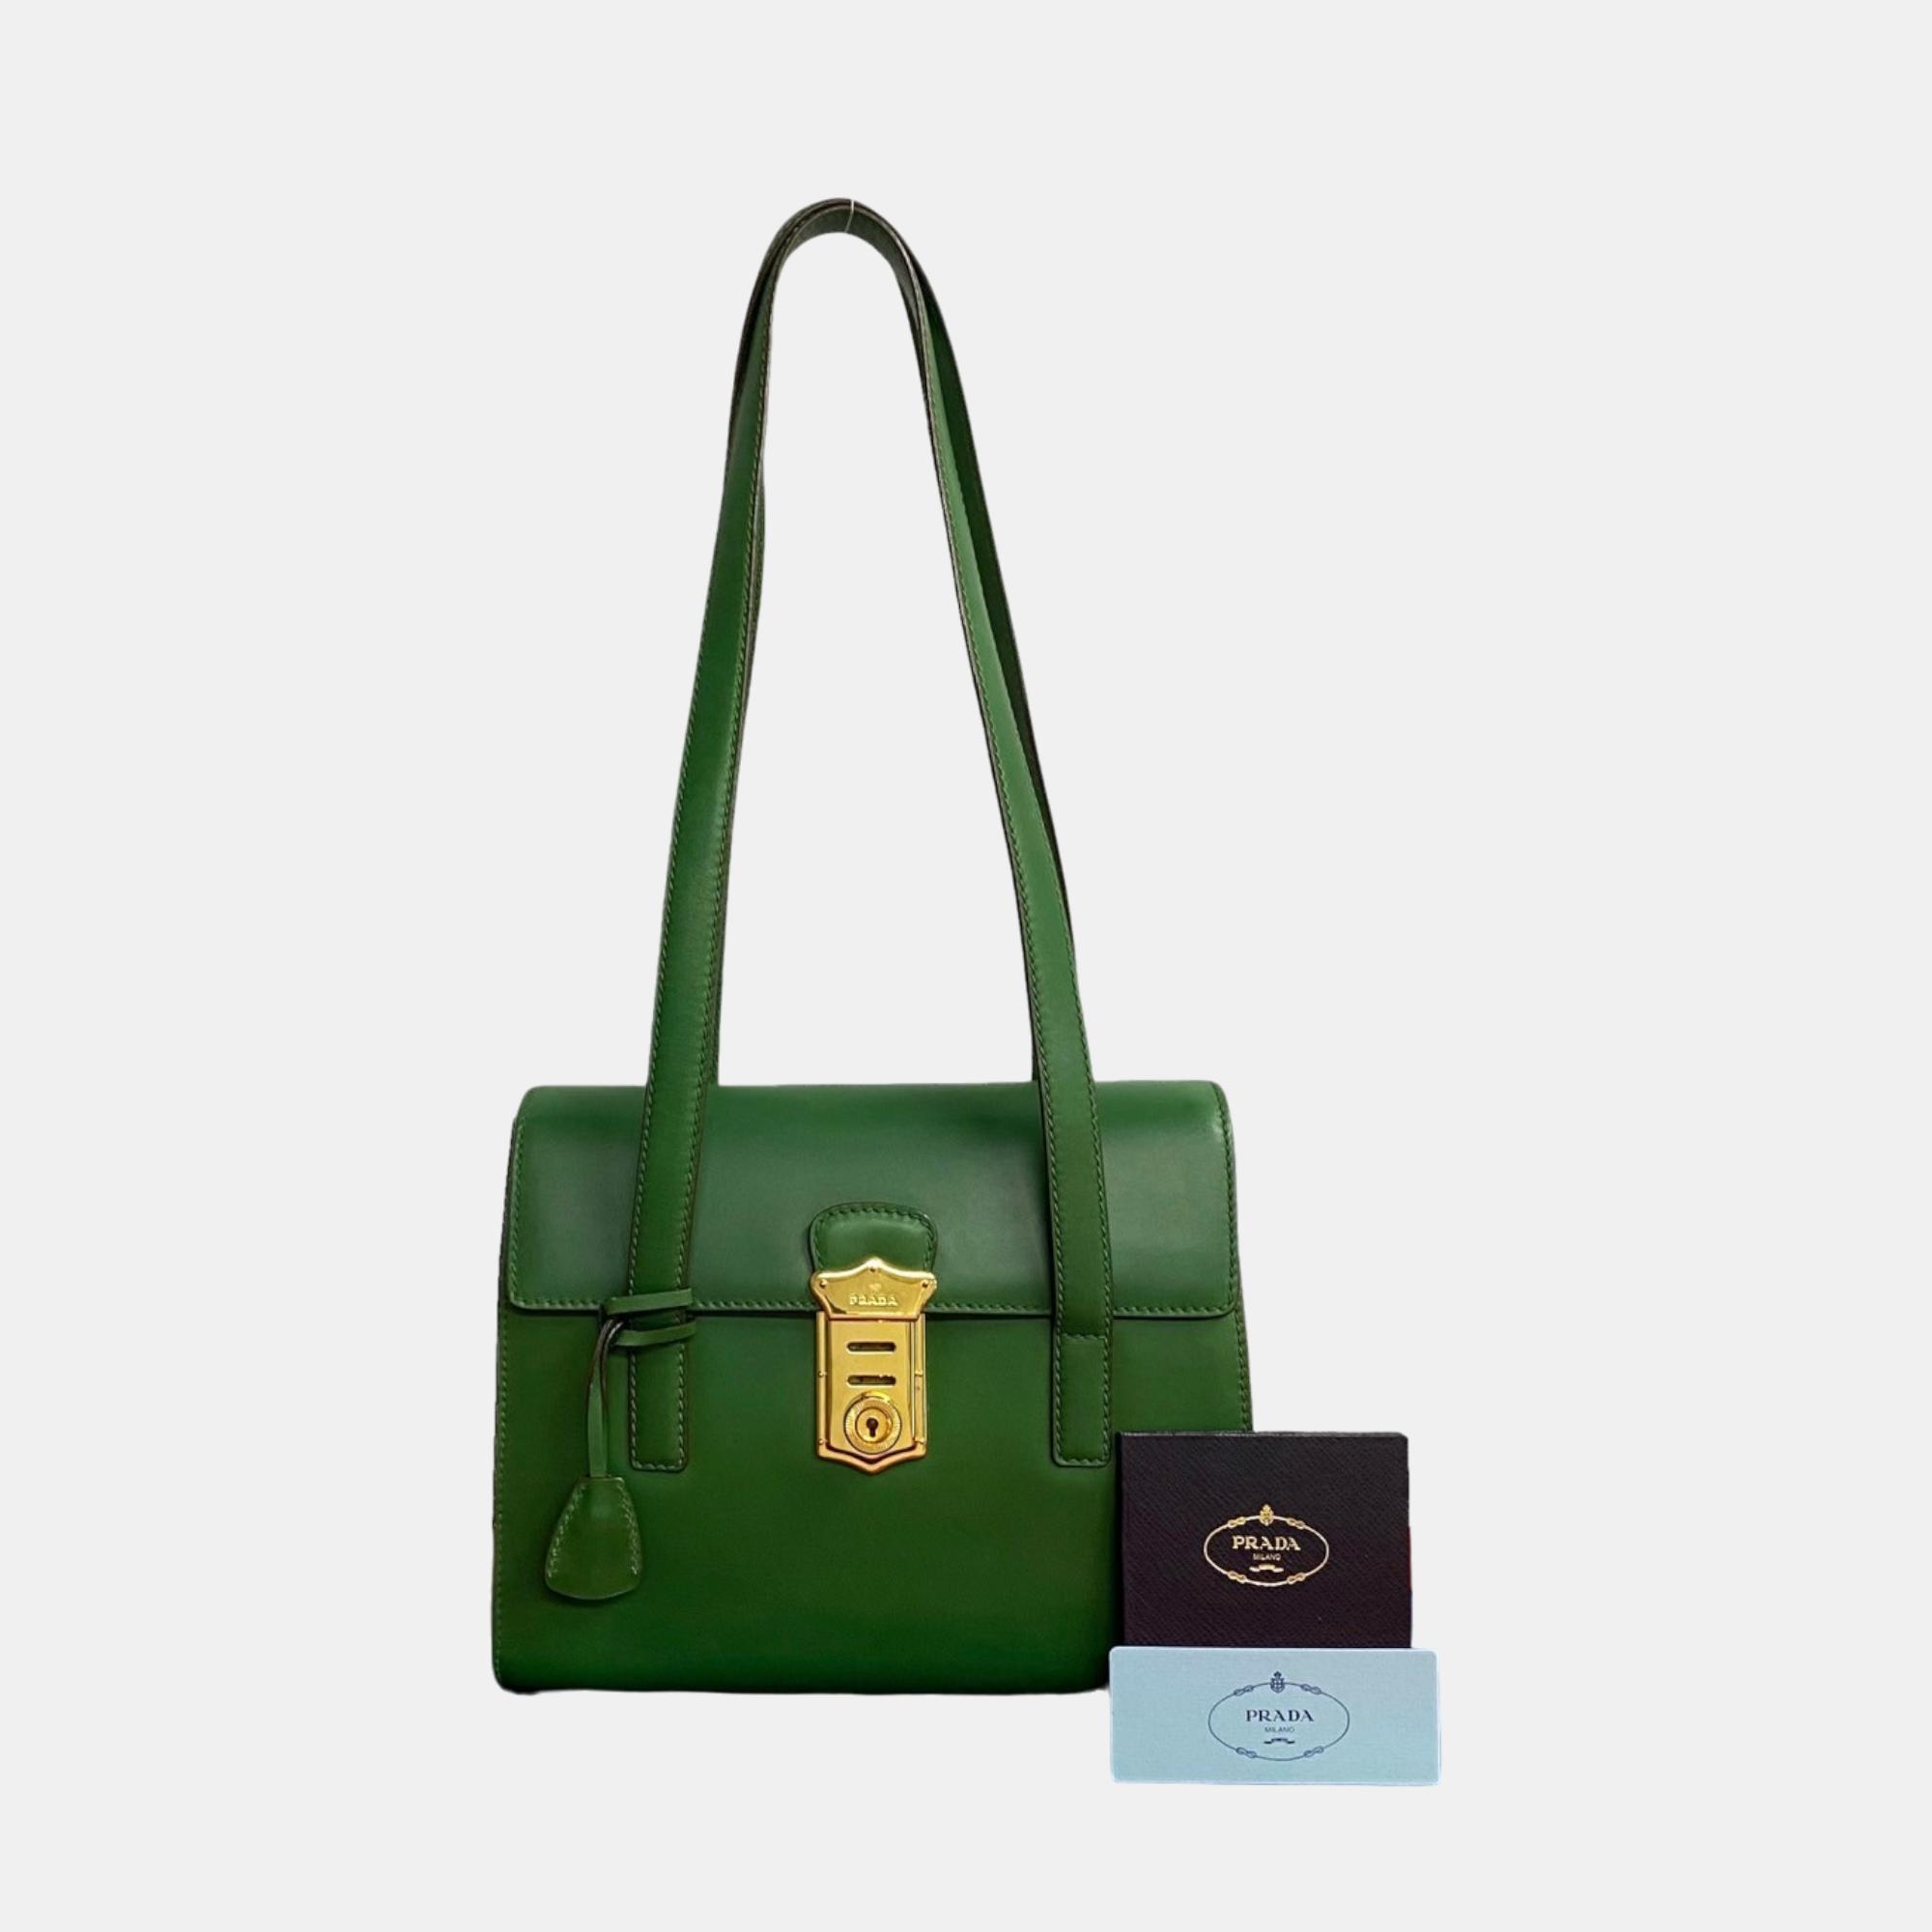 Prada green leather shoulder bag